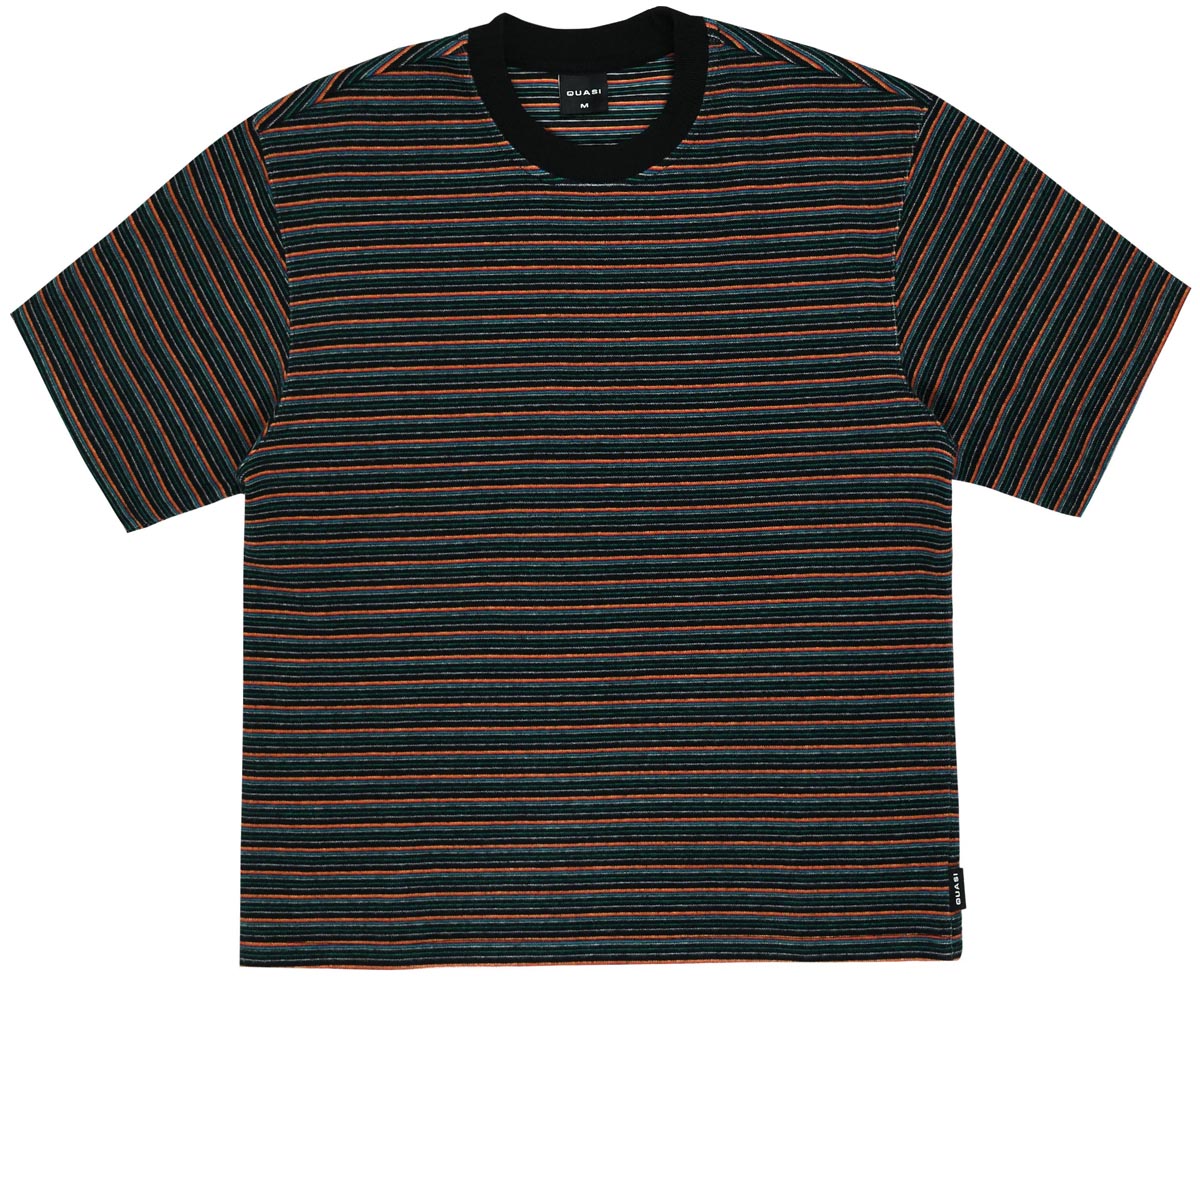 Quasi Sync Striped T-Shirt - Black image 1